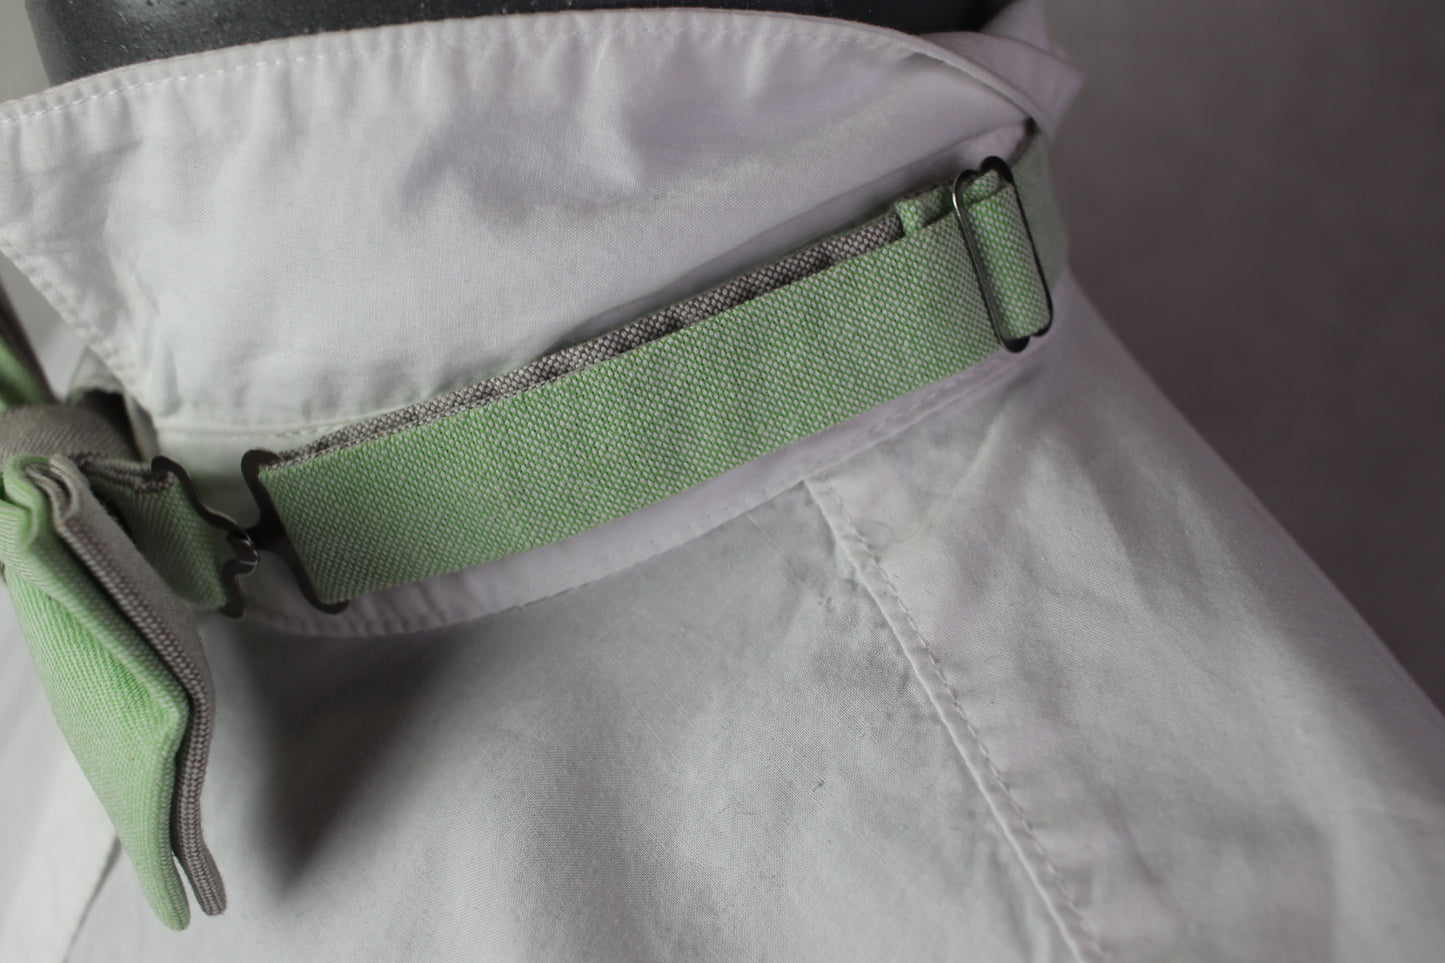 Vintage pre-tied mint green grey bow tie adjustable